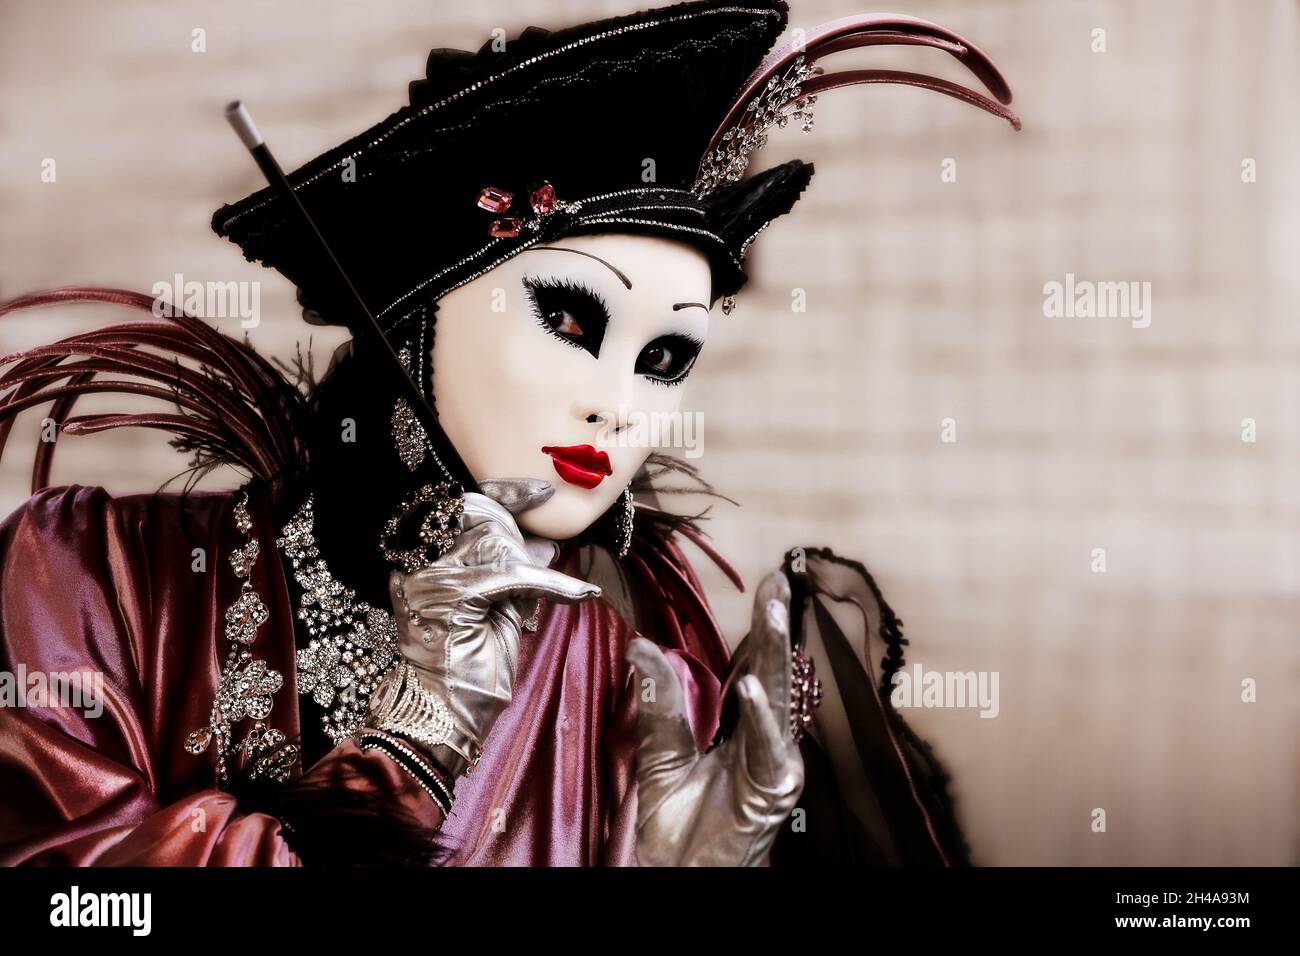 Karneval in Venedig, Carnevale di Venezia,  Masken in Venedig,  Maskerade Venice, Venedig Maske oder Masken  mit Kostümen, Kleider und schönen Frauen Stock Photo